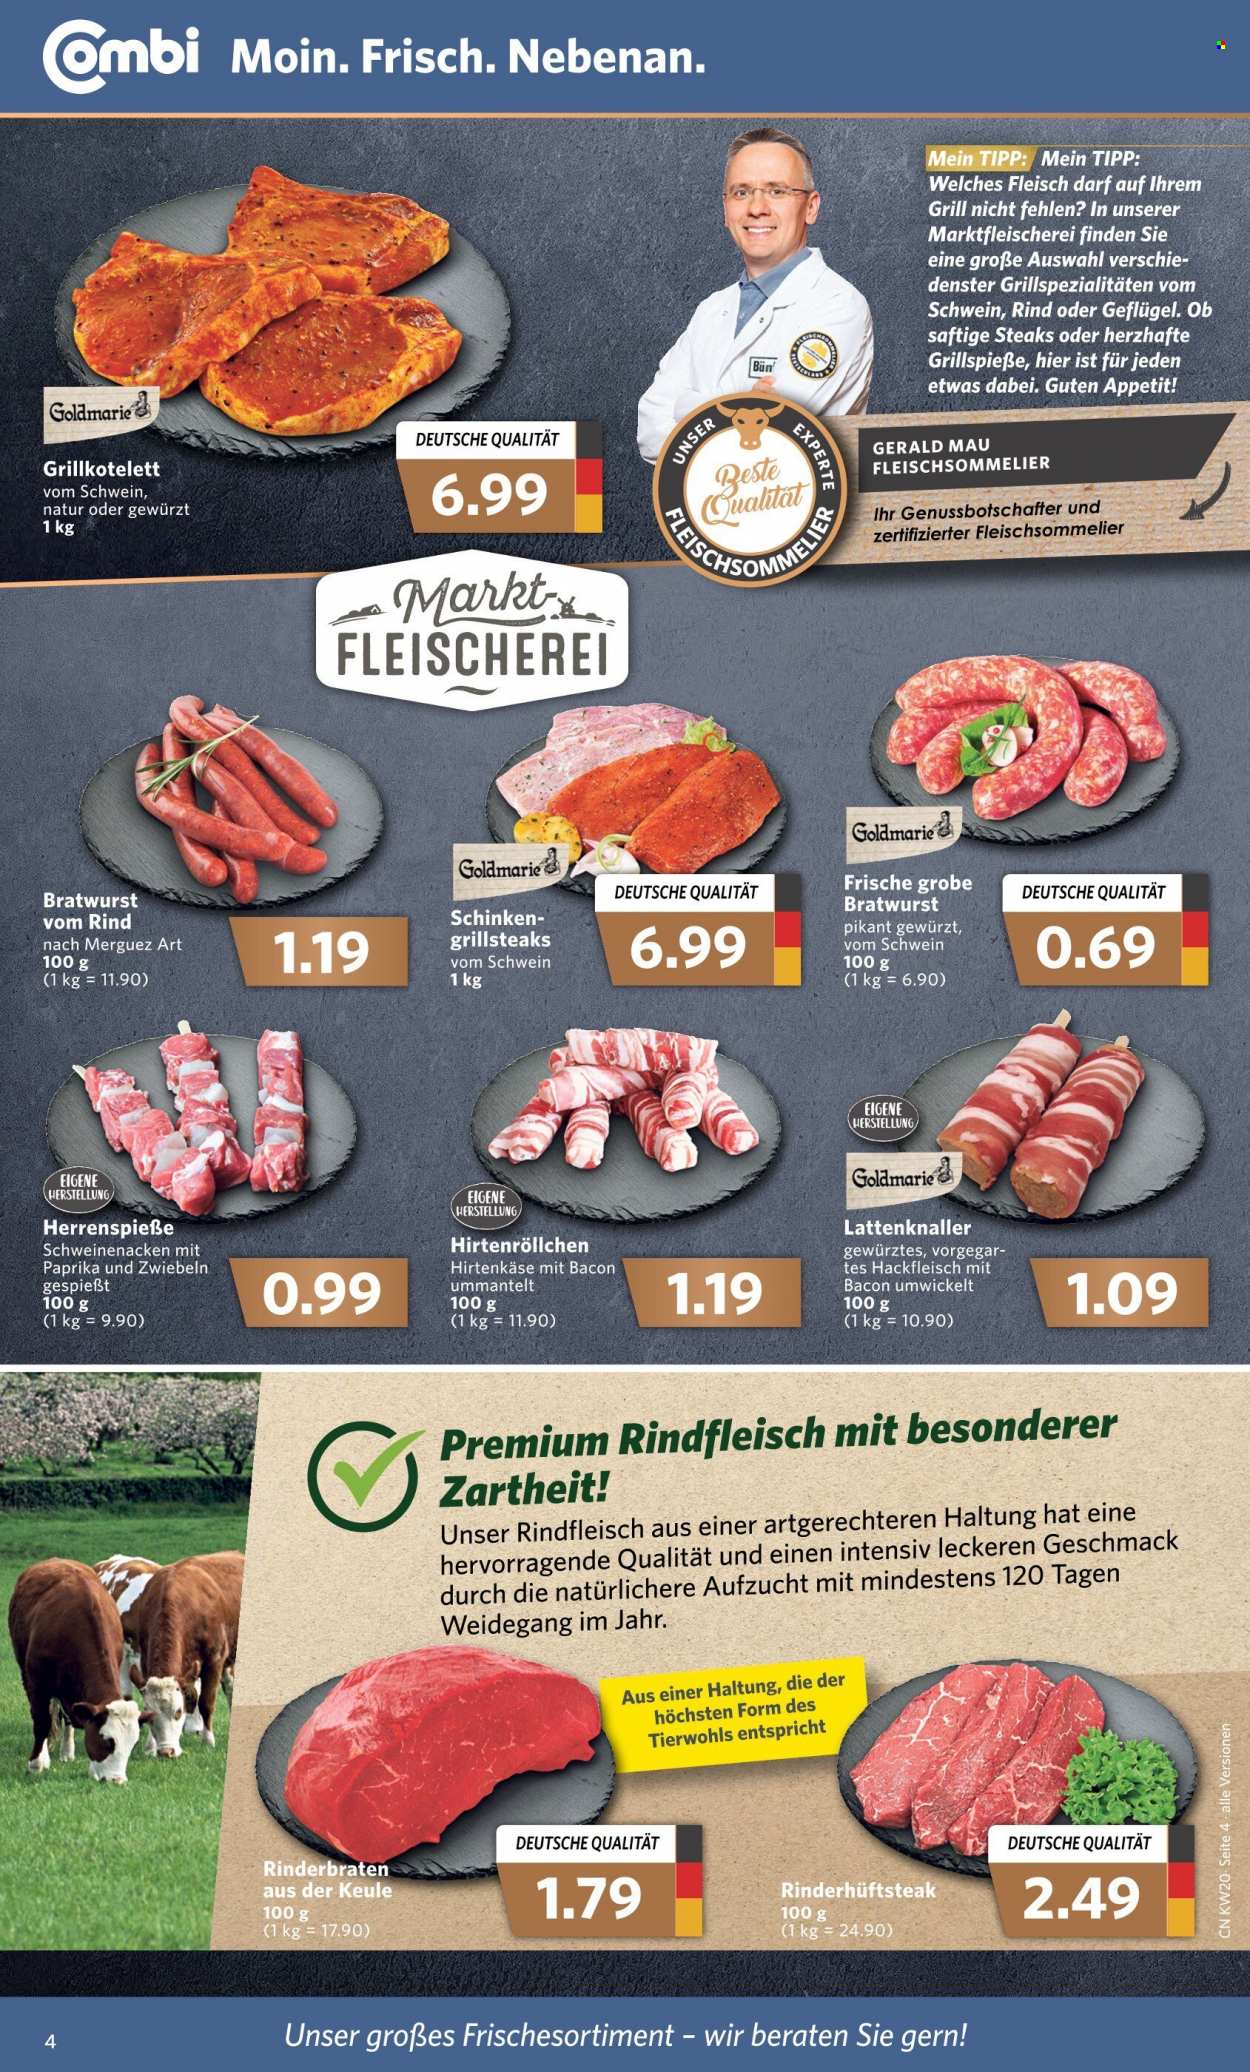 thumbnail - Prospekte Combi - 16.05.2022 - 21.05.2022 - Produkte in Aktion - Steak, Speisezwiebeln, Rinderbraten, Hüftsteak, Rindersteak, Hackfleisch, Schweinehackfleisch, Merguez-Bratwurst, Schweinenacken, Grillspieße, Hirtenröllchen, Schinken, Bratwurst, Käse, Hirtenkäse, Grill. Seite 4.